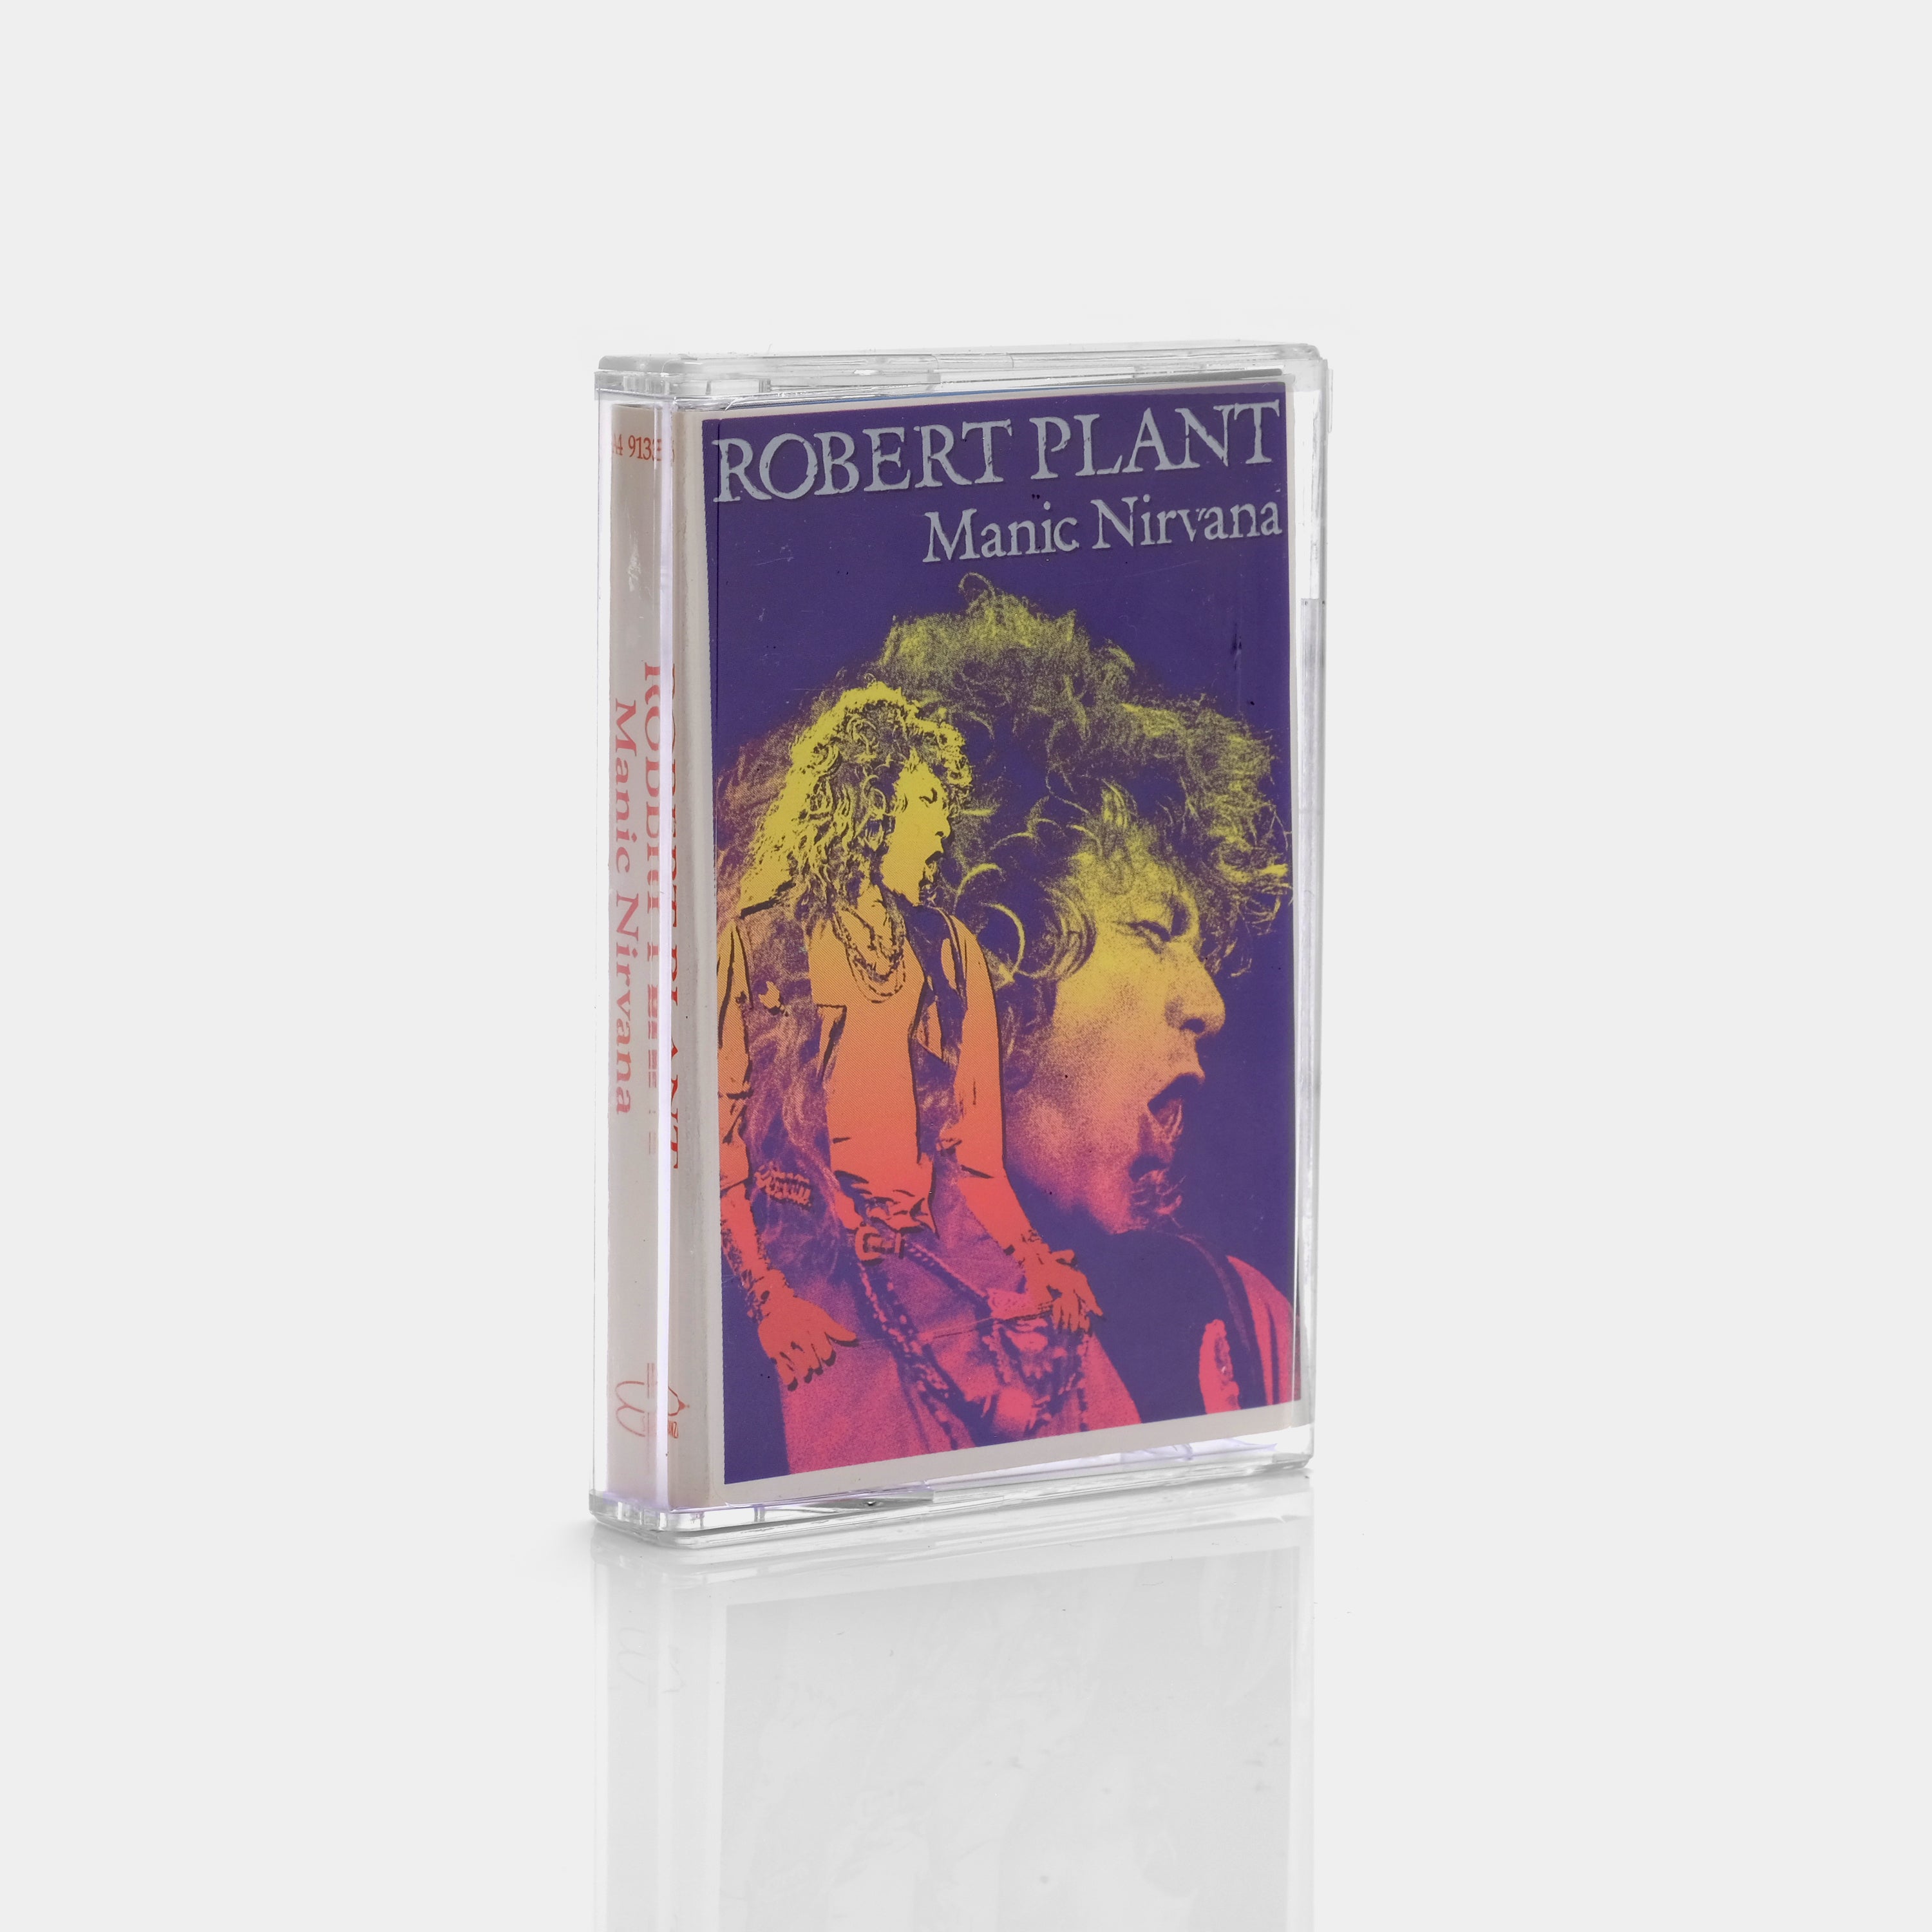 Robert Plant - Manic Nirvana Cassette Tape